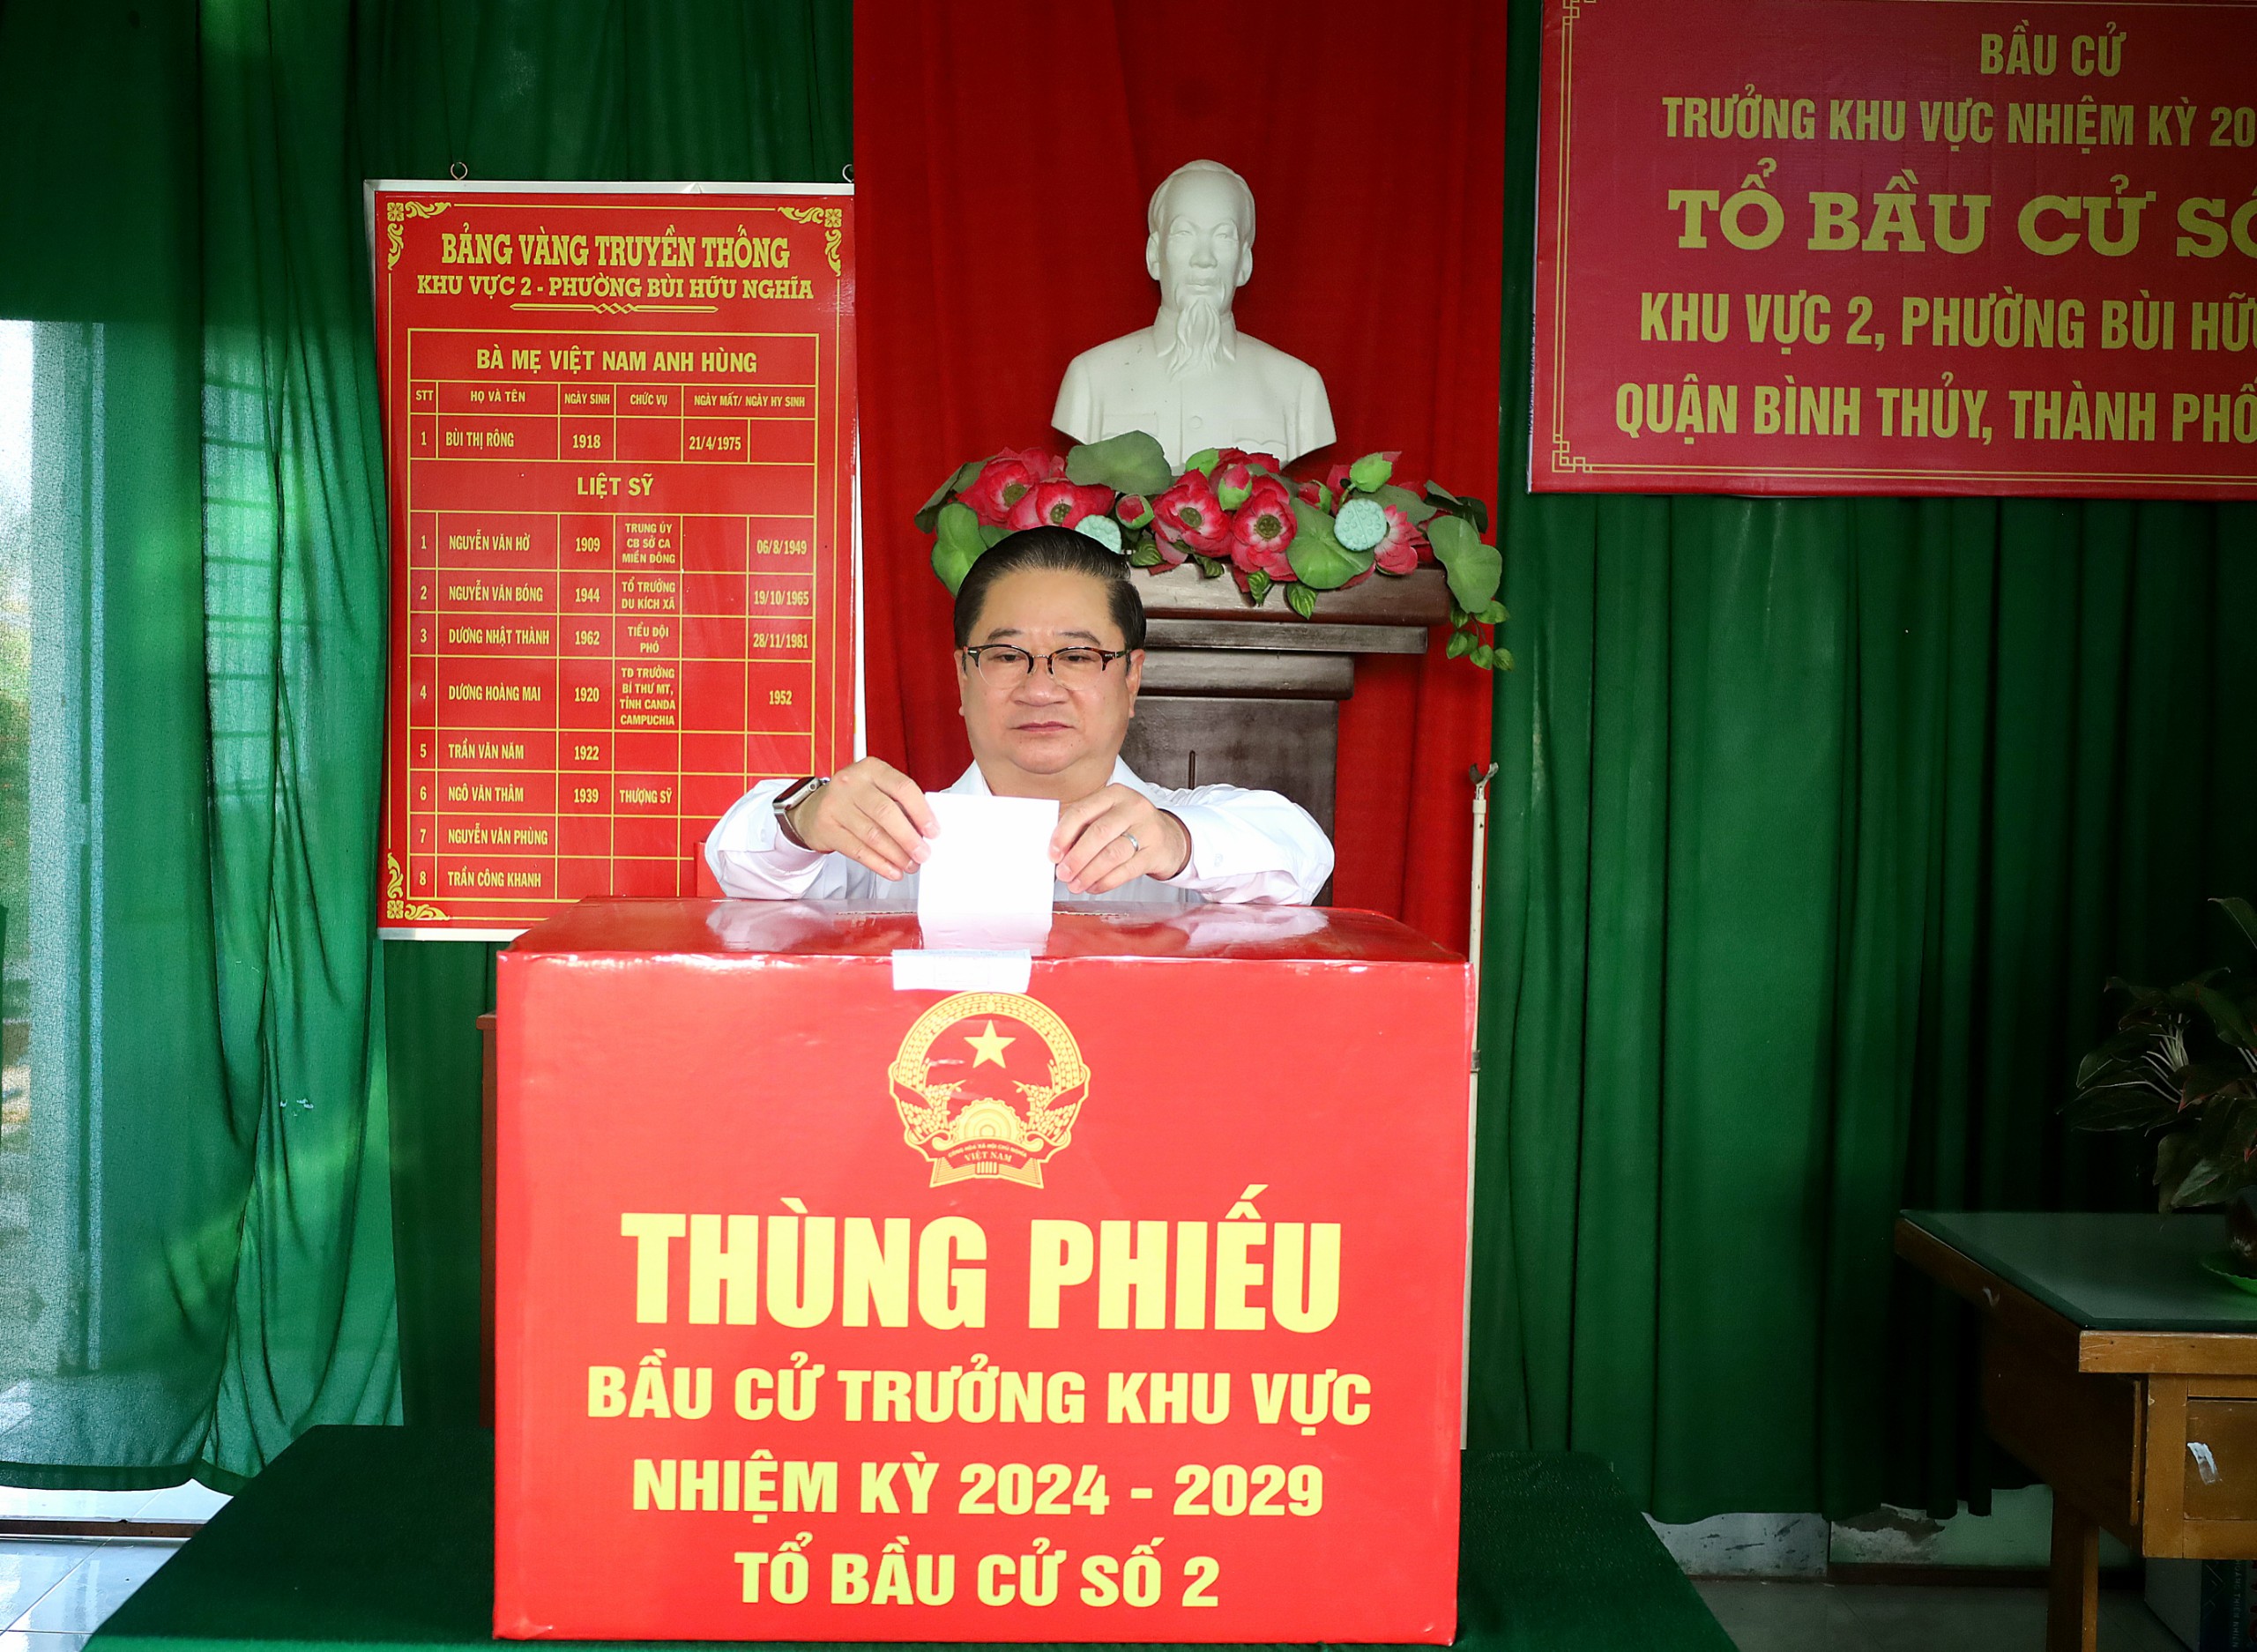 Ông Trần Việt Trường - Phó Bí thư Thành ủy, Chủ tịch UBND TP. Cần Thơ bỏ phiếu tại Tổ bầu cử số 2 – phường Bùi Hữu Nghĩa, quận Bình Thủy.